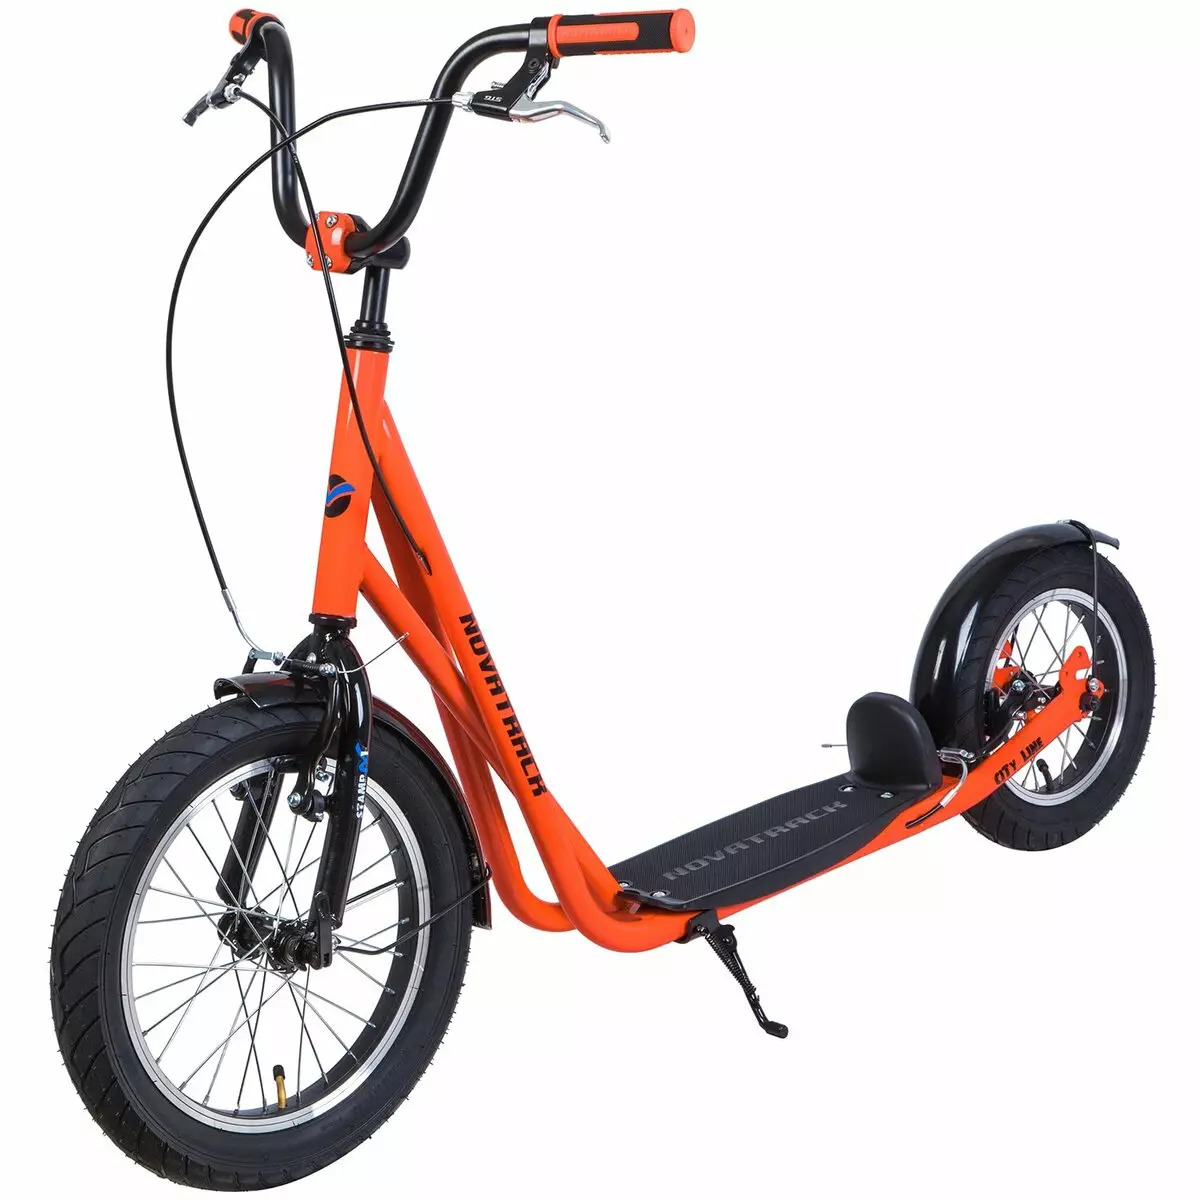 Accessori per scooter: tipi di accessori per lavandini elettrici. Come scegliere i migliori accessori per bambini e scooter per adulti? 8675_21